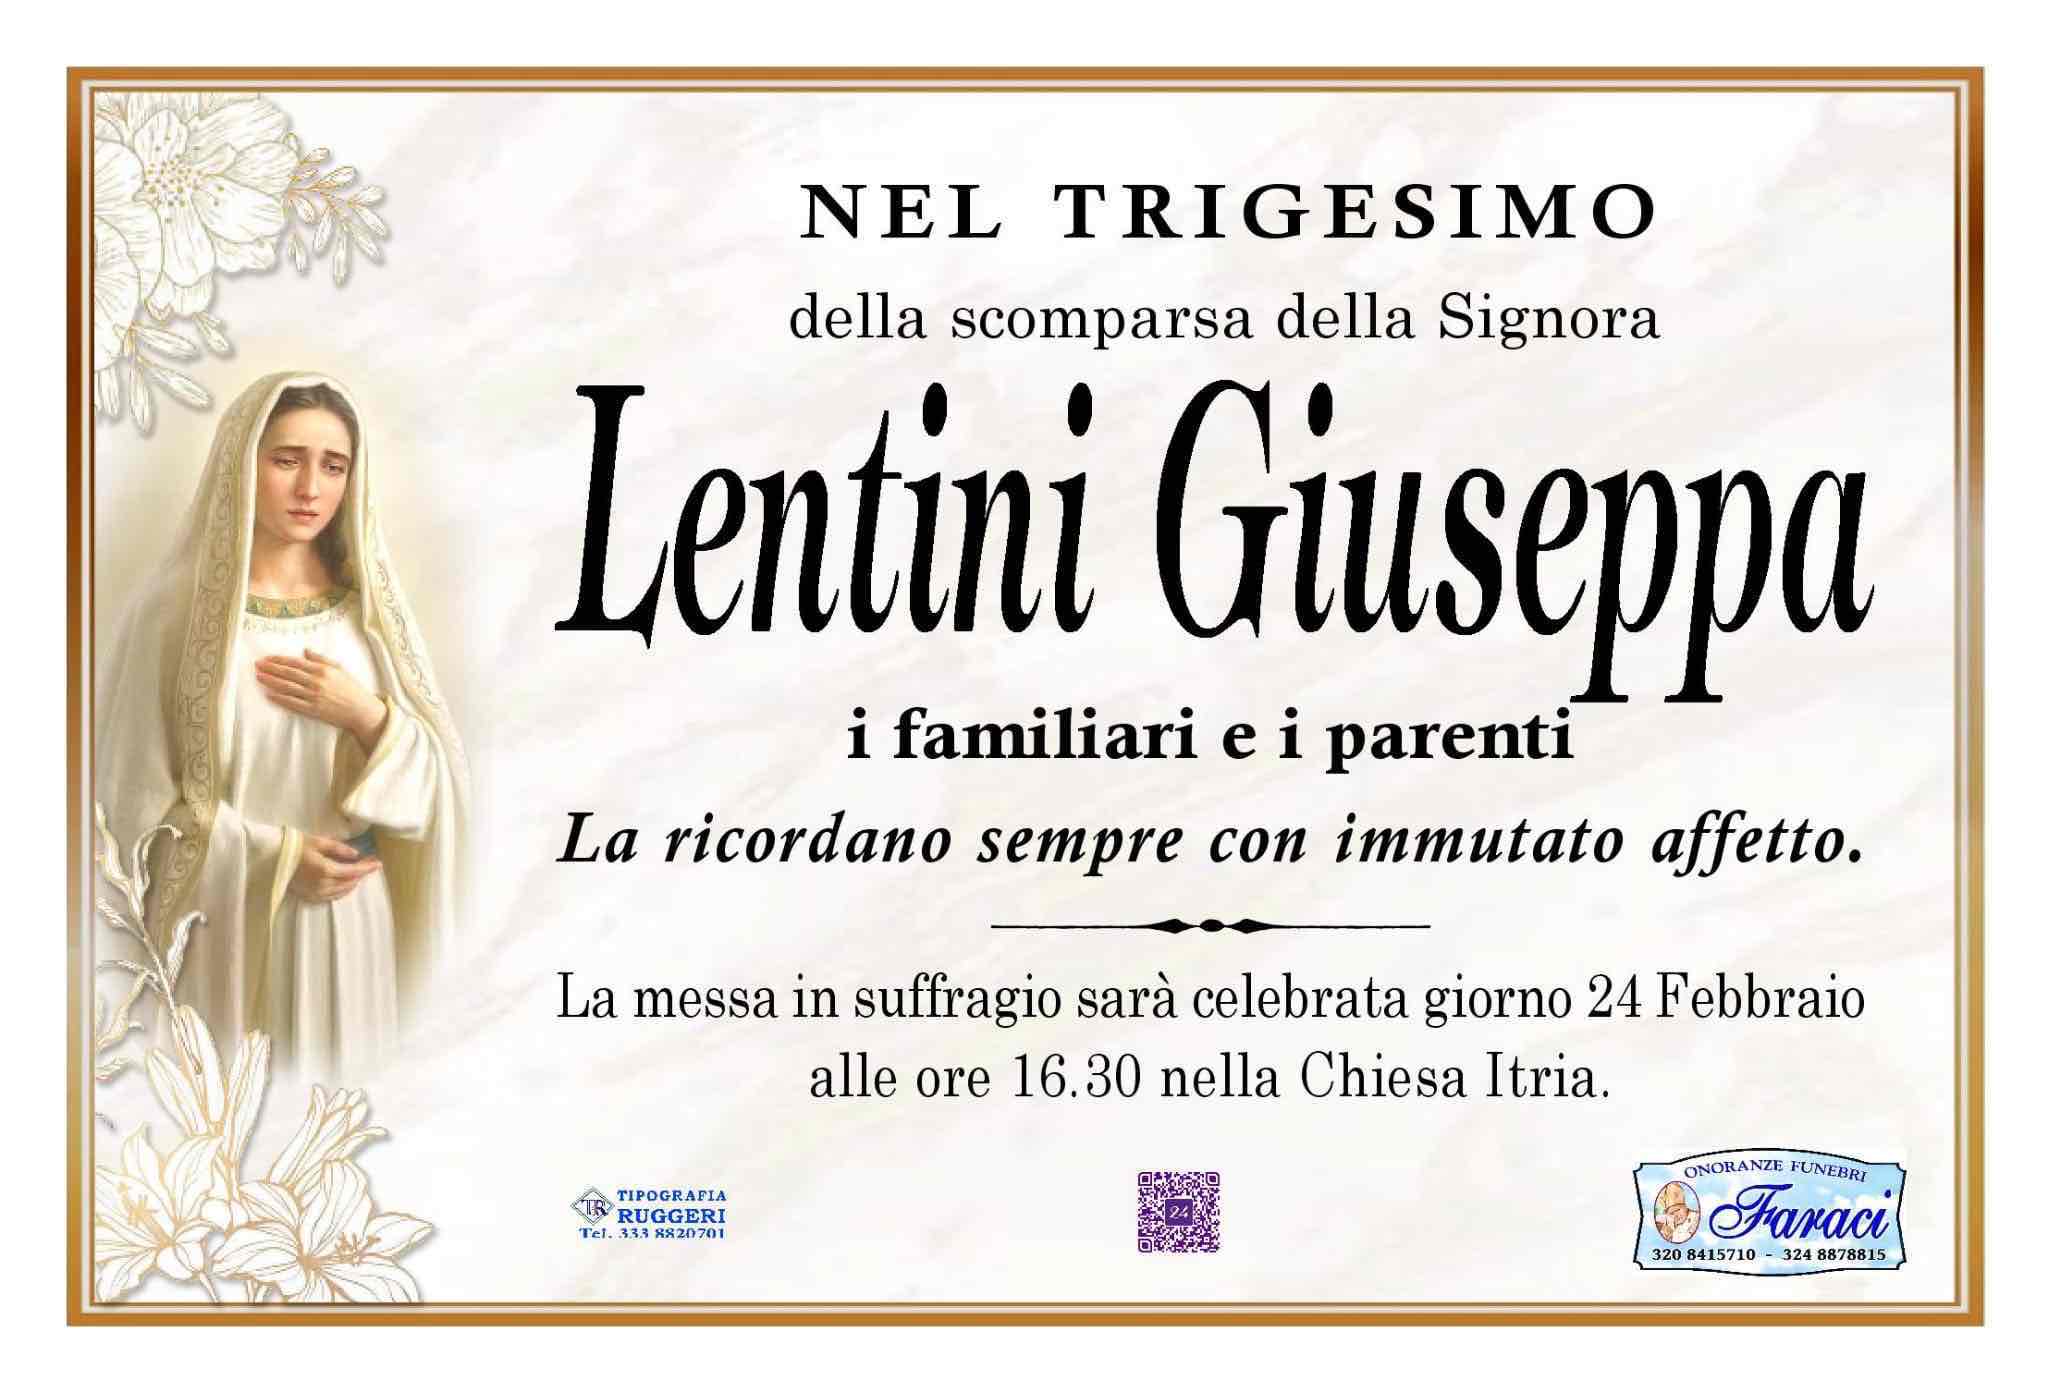 Giuseppa Lentini